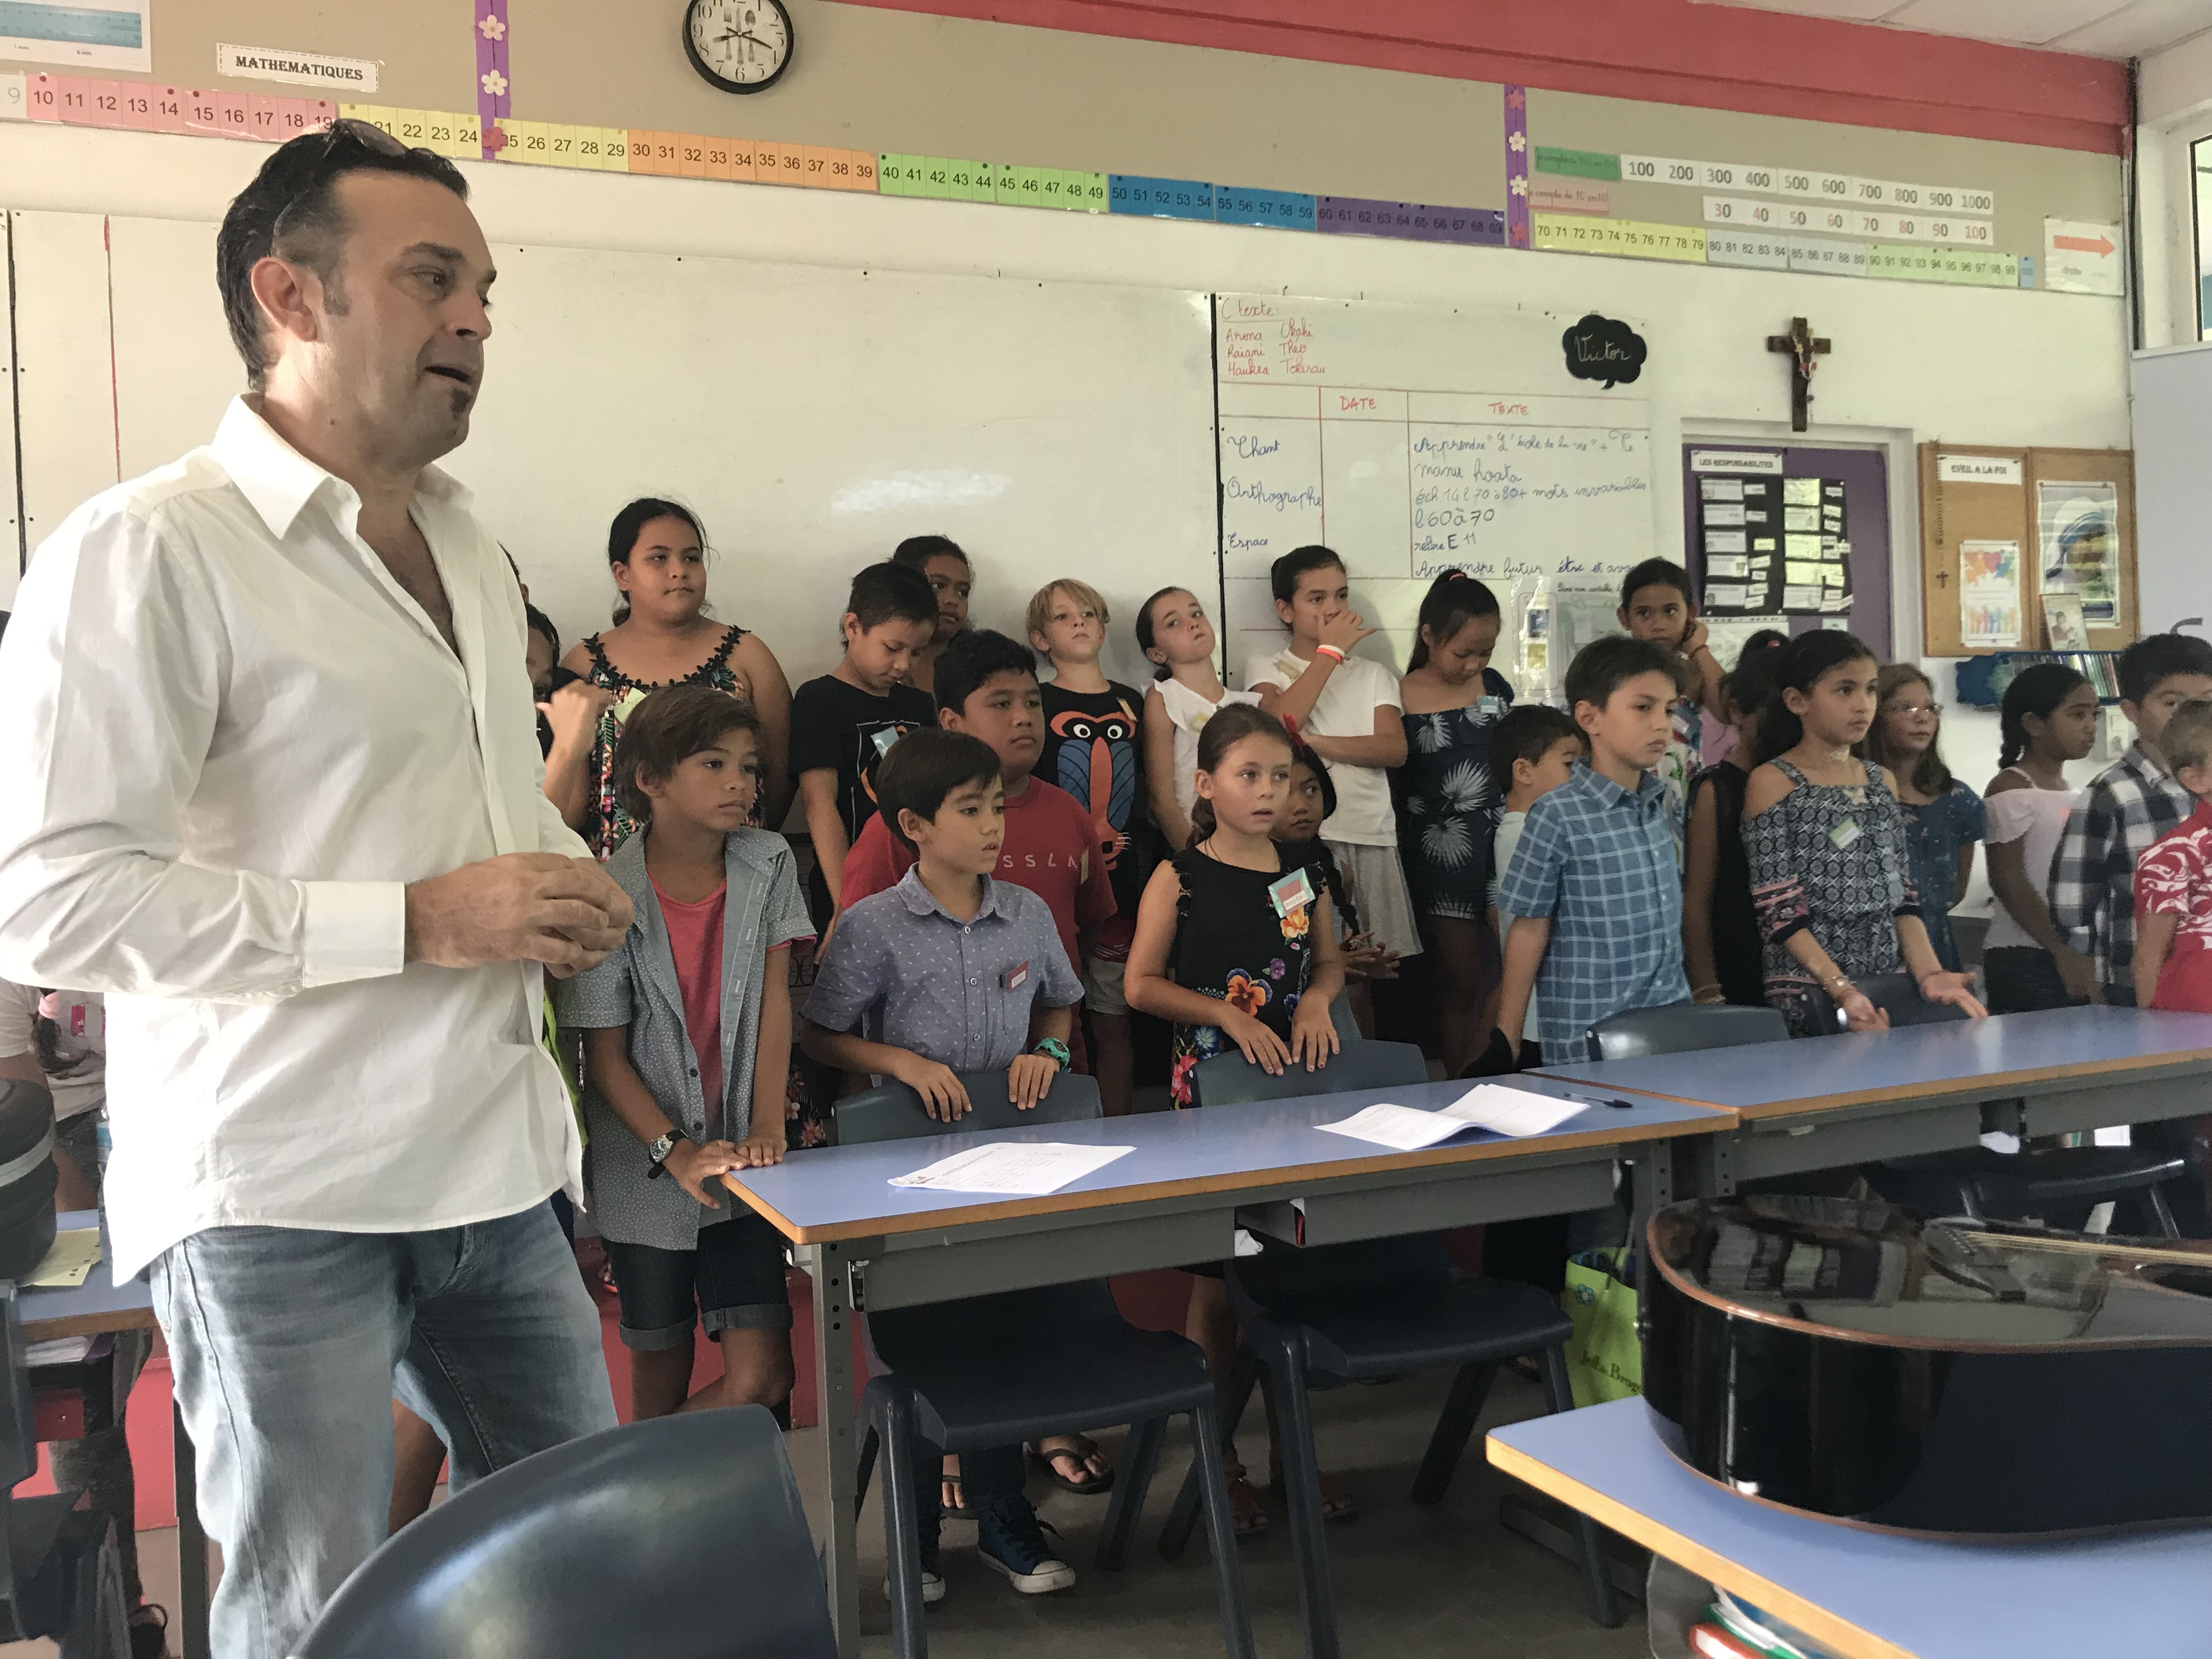 Les élèves de la classe de CE2 B de la Mission interprètent leur chanson : « L’école de la vie » composée avec l’aide de Leo Marais.